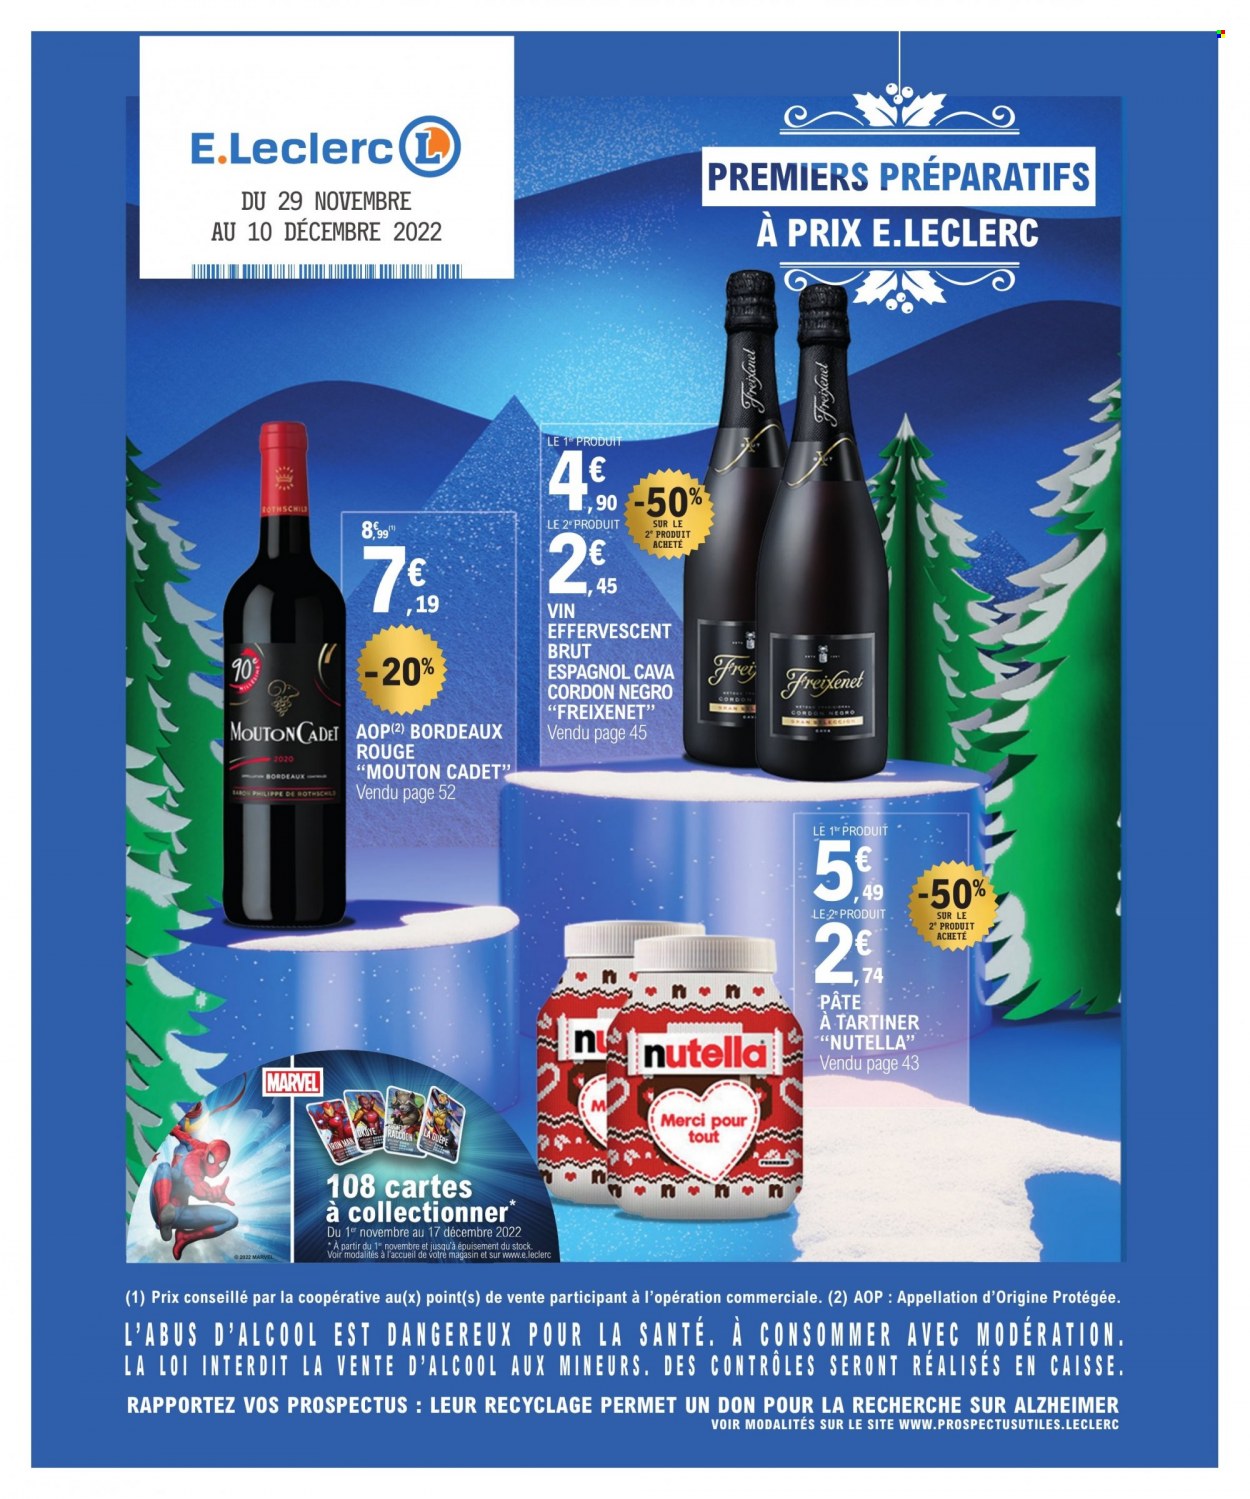 thumbnail - Catalogue E.Leclerc - 29/11/2022 - 10/12/2022 - Produits soldés - pâte à tartiner, Nutella, Bordeaux, vin rouge, vin. Page 1.